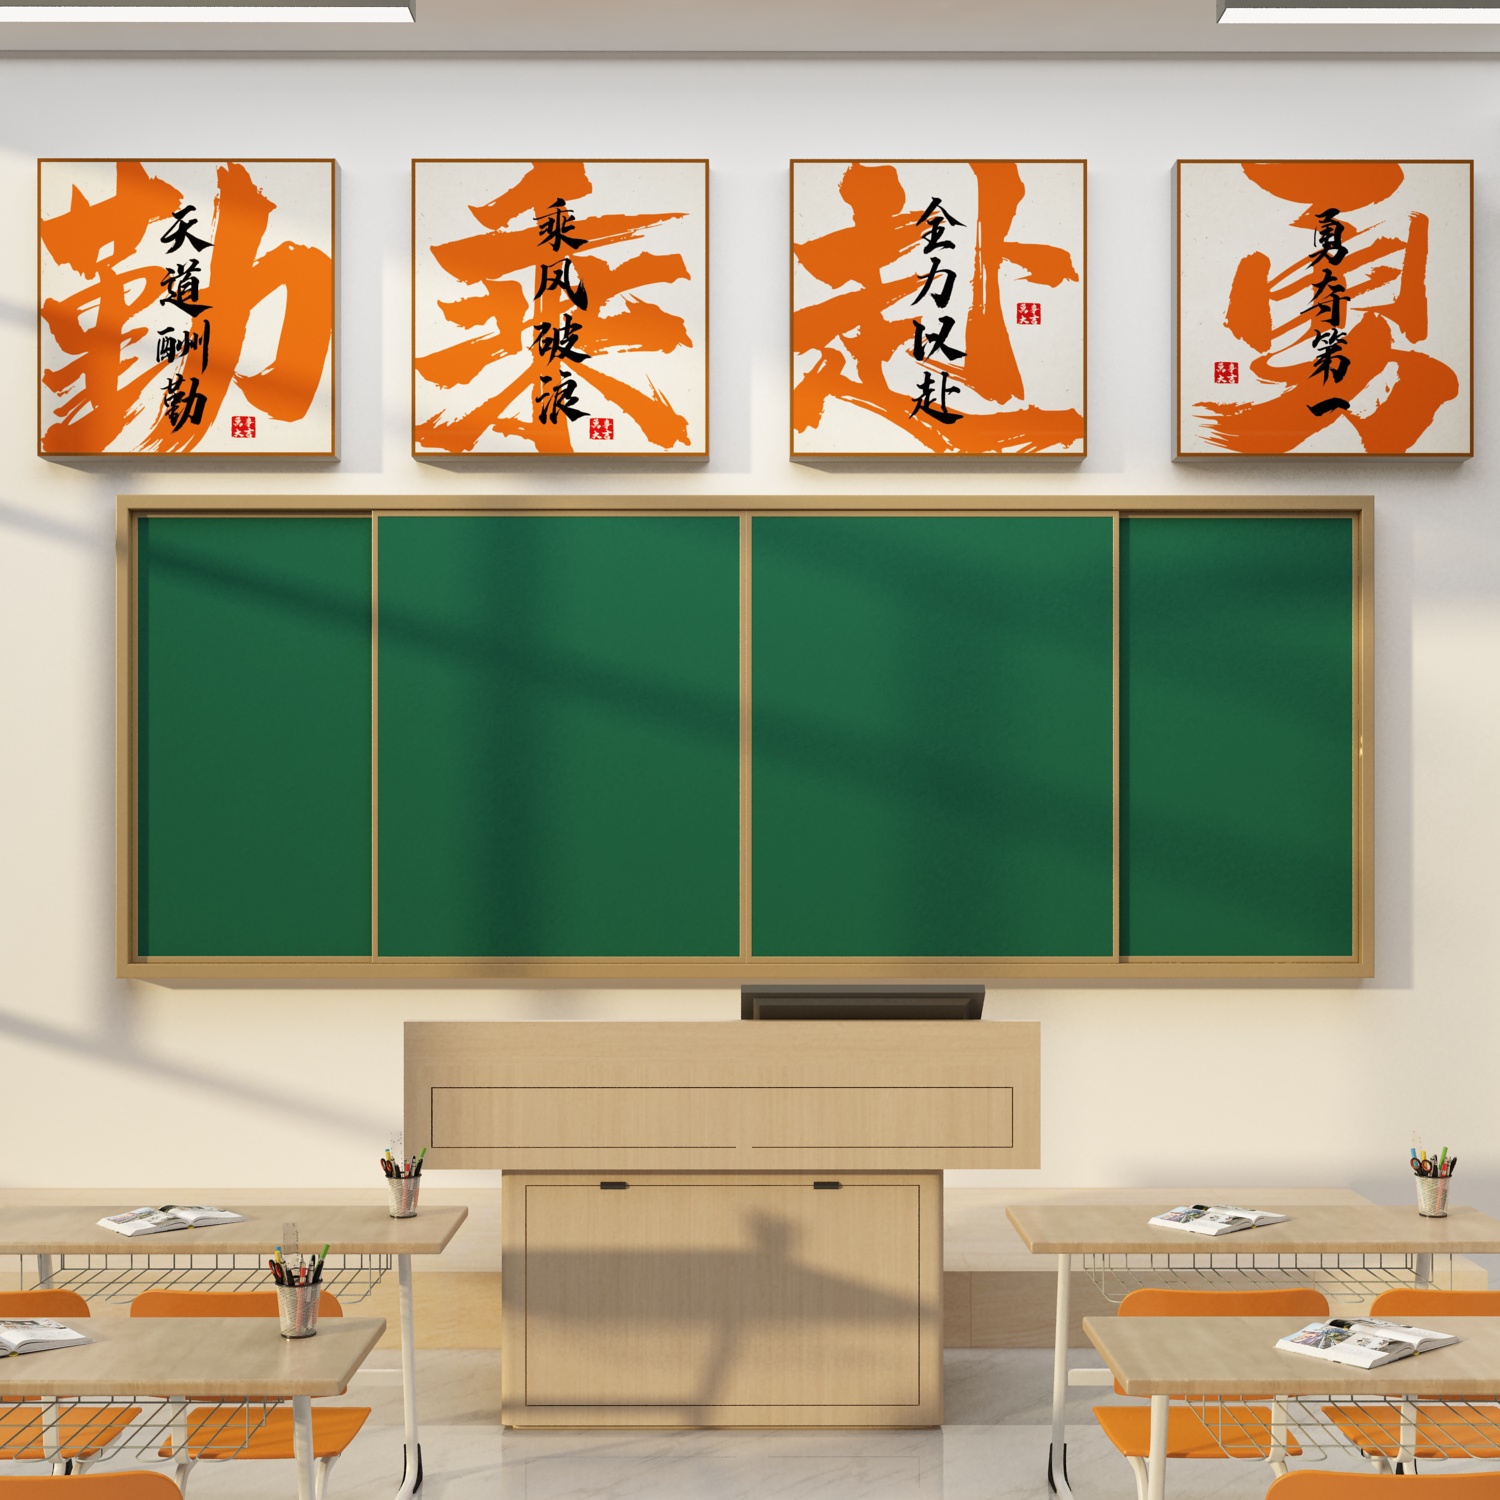 班级布置教室装饰文化墙面贴初中高三开学黑板报上方挂画励志标语